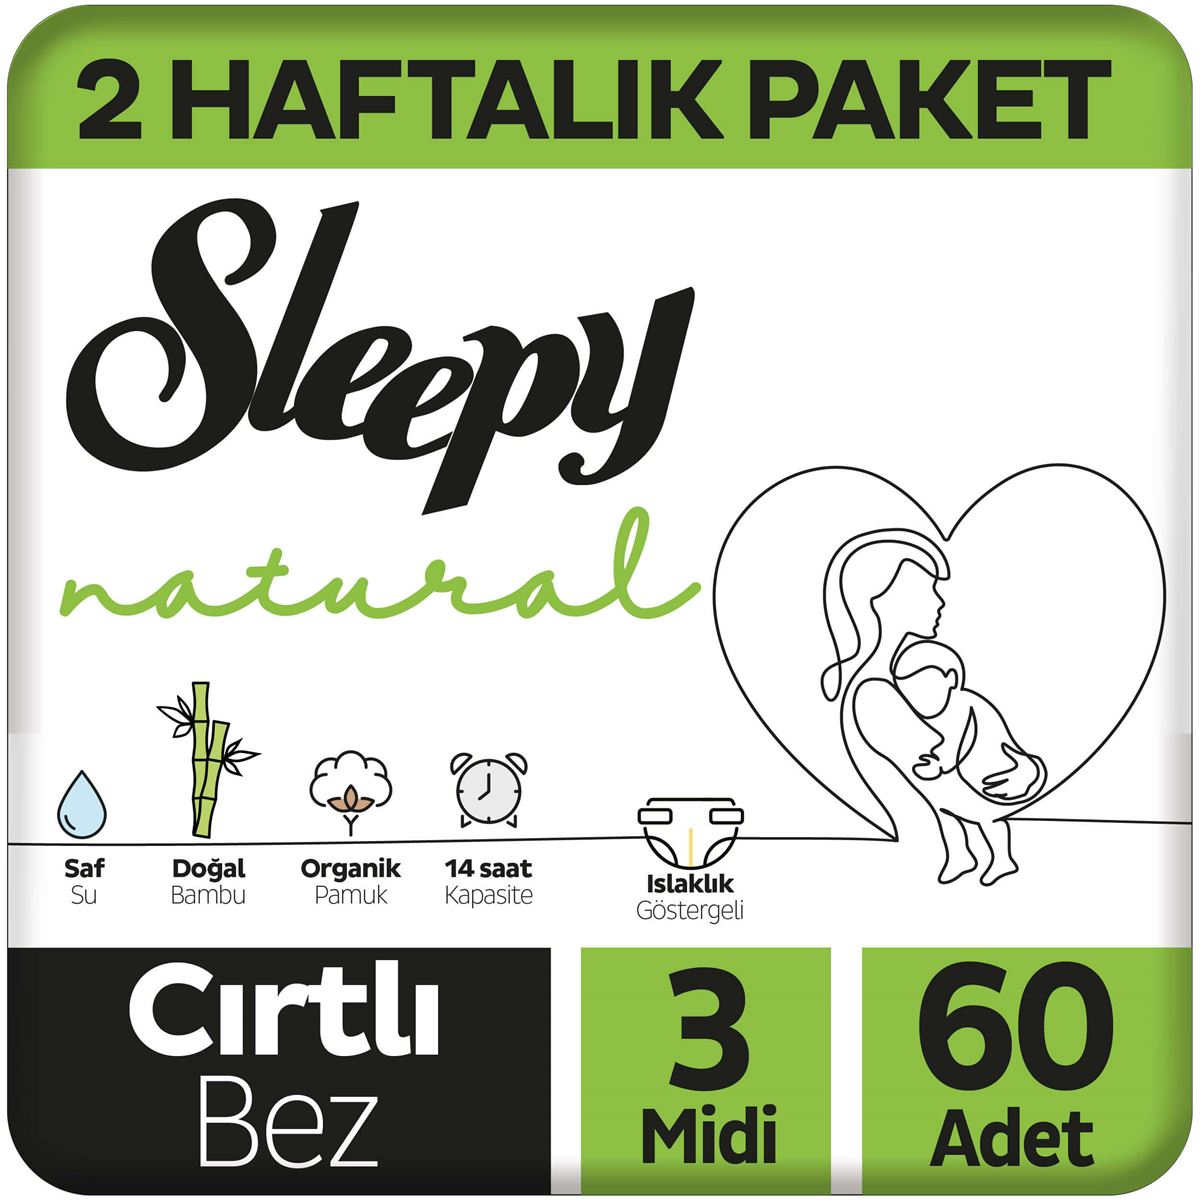 Sleepy Natural 2 Haftalık Paket Bebek Bezi 3 Numara Midi 60 Adet